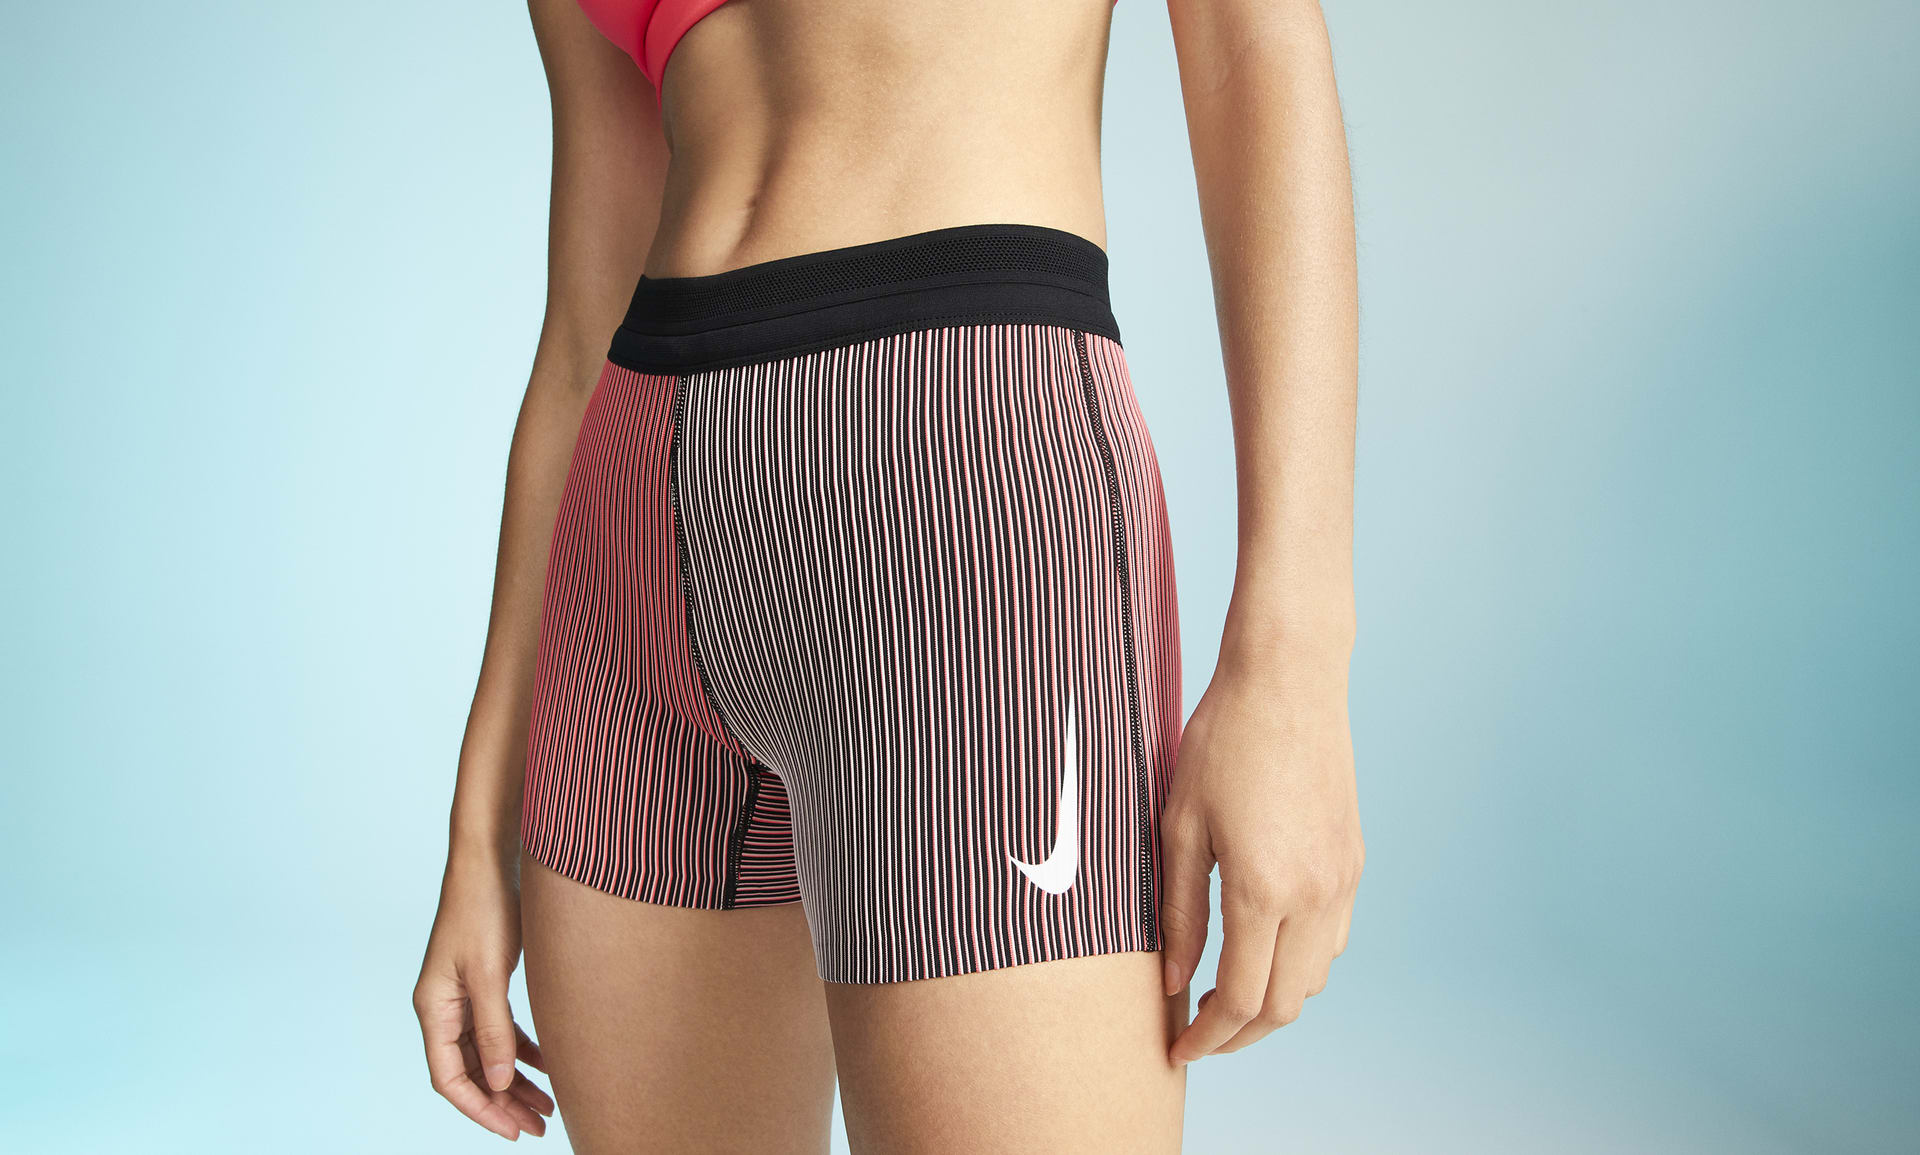 Nike Women's AeroSwift Tight Running Shorts, Size: Medium, Black